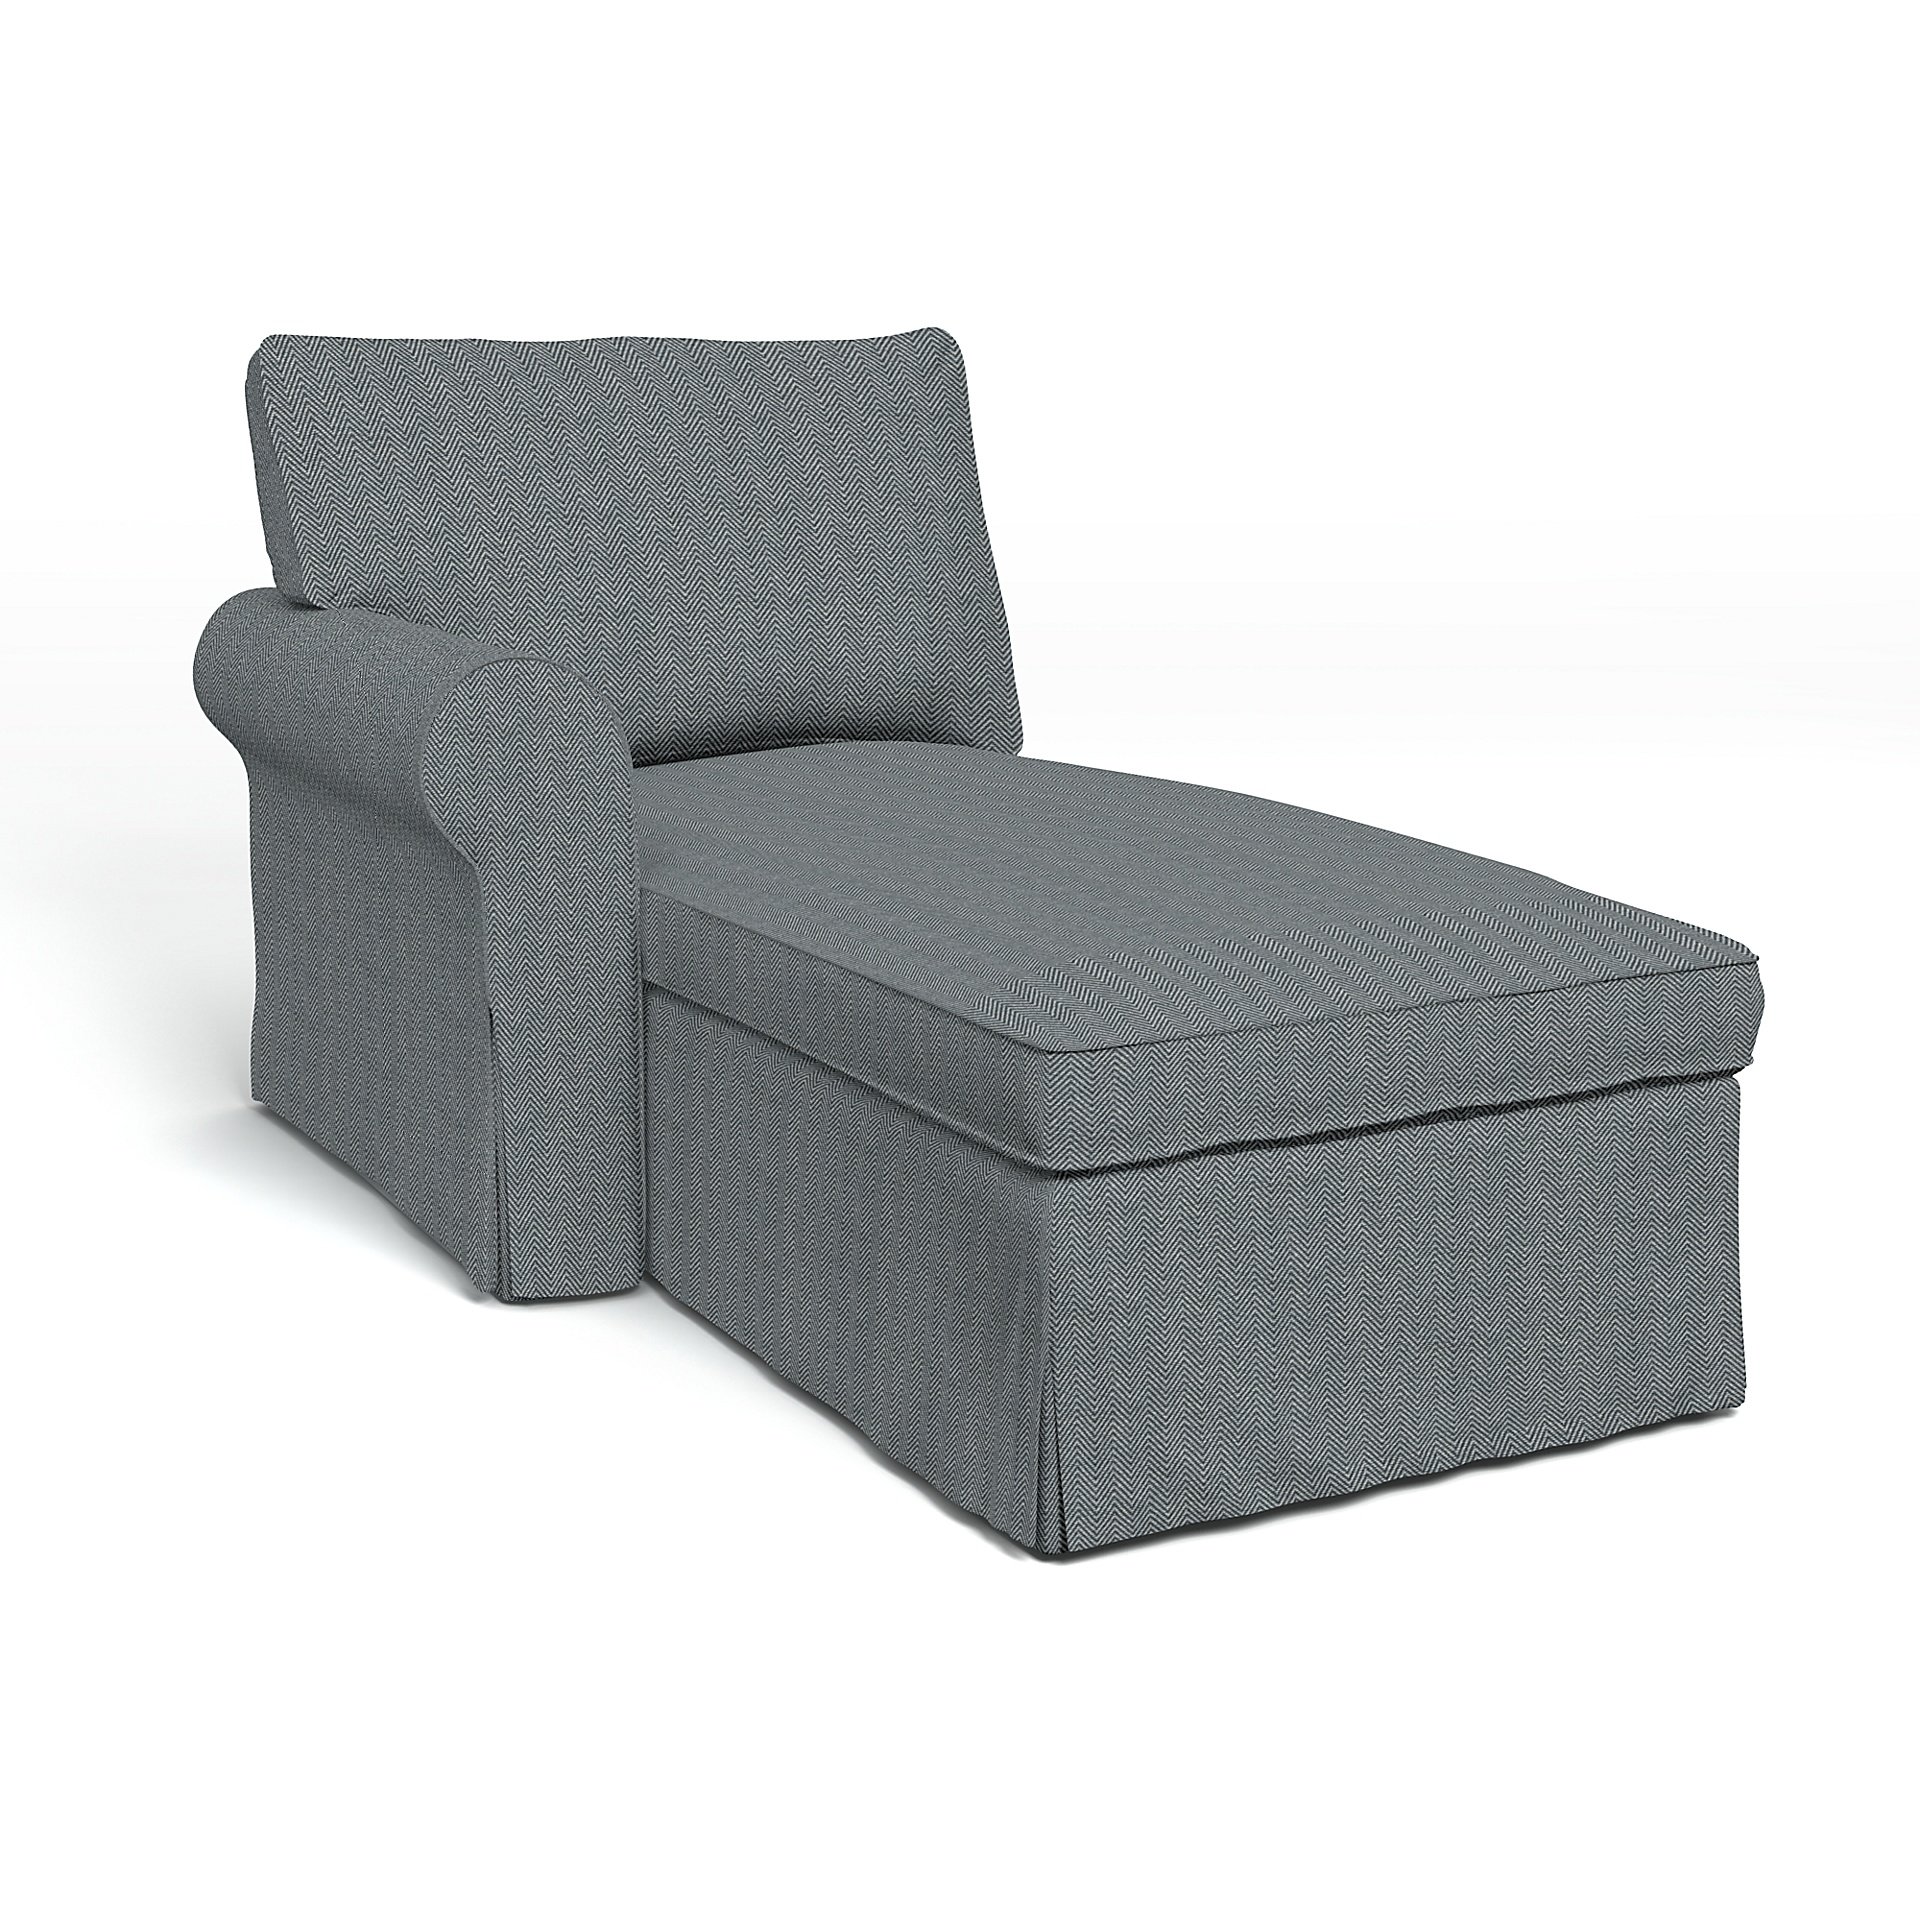 IKEA - Ektorp Chaise with Left Armrest Cover, Denim, Cotton - Bemz